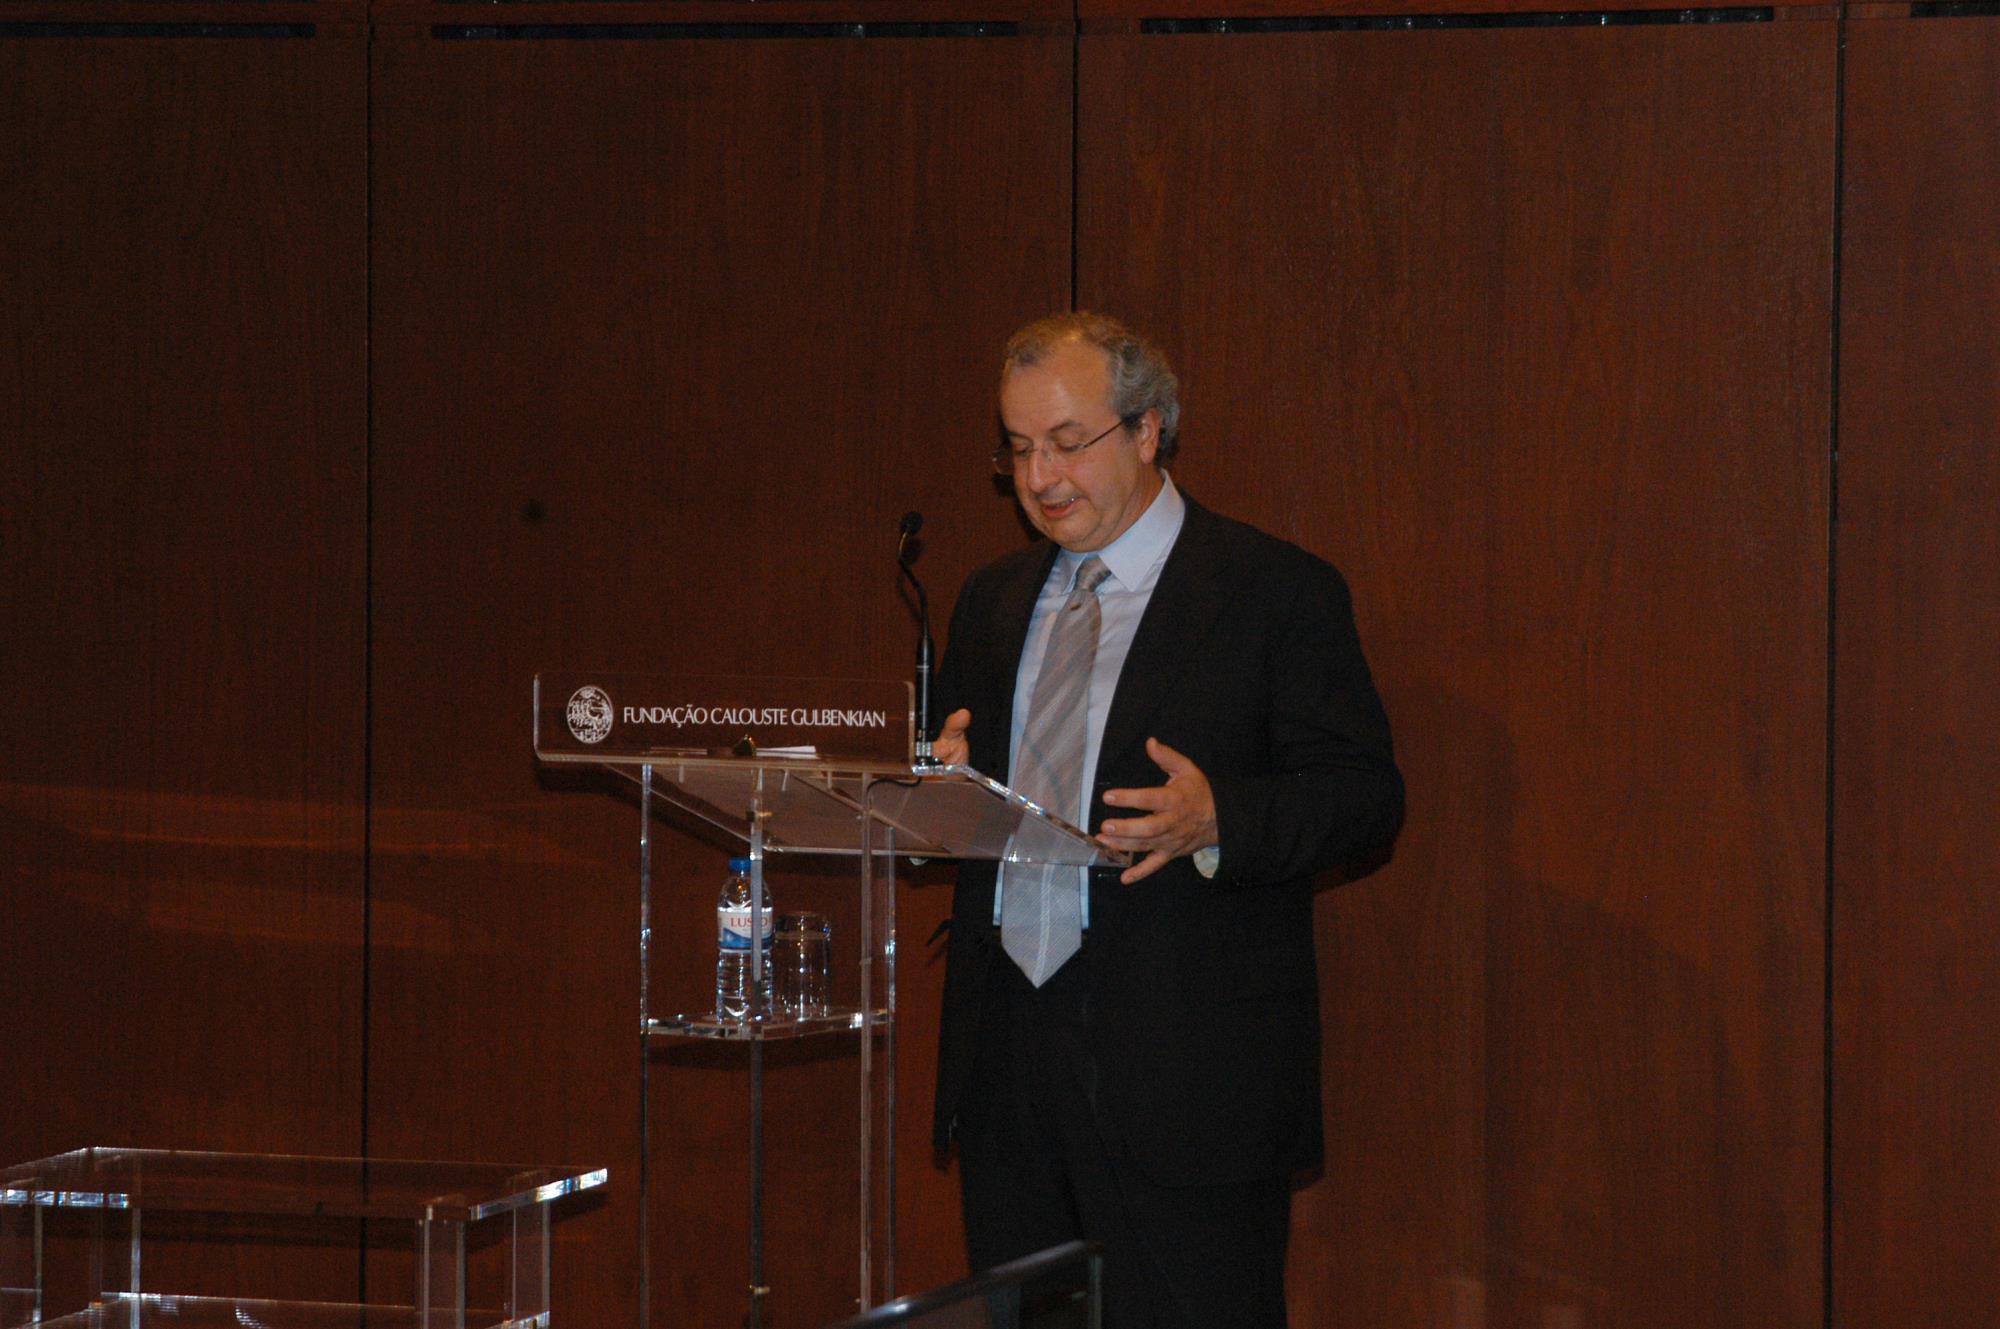 Conferência «A Filosofia fala Grego», proferida por José Pedro Sena